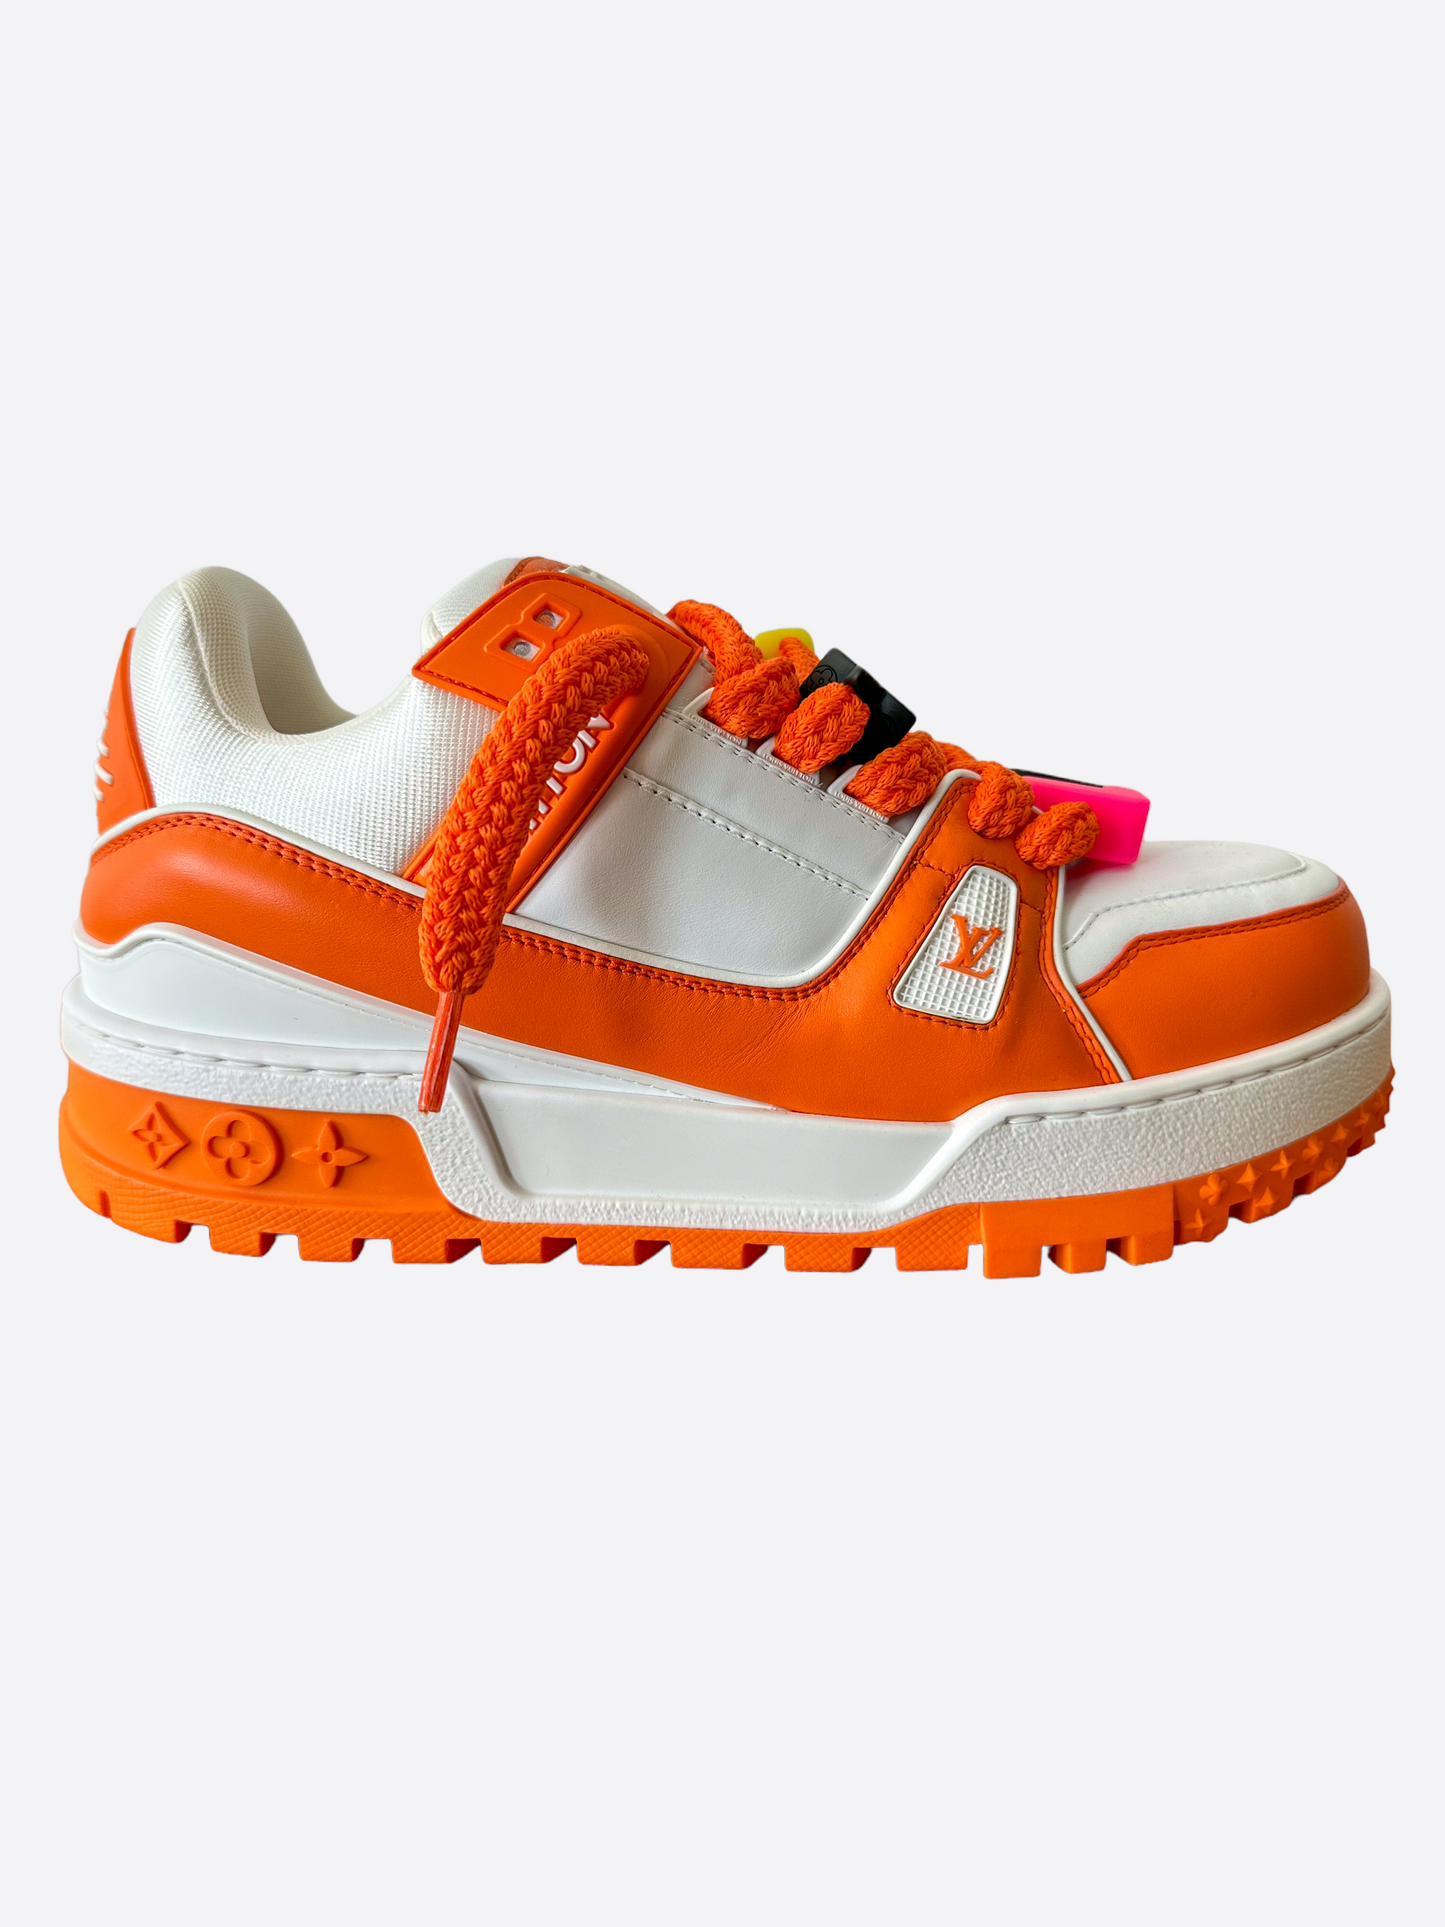 louis vuitton orange shoes